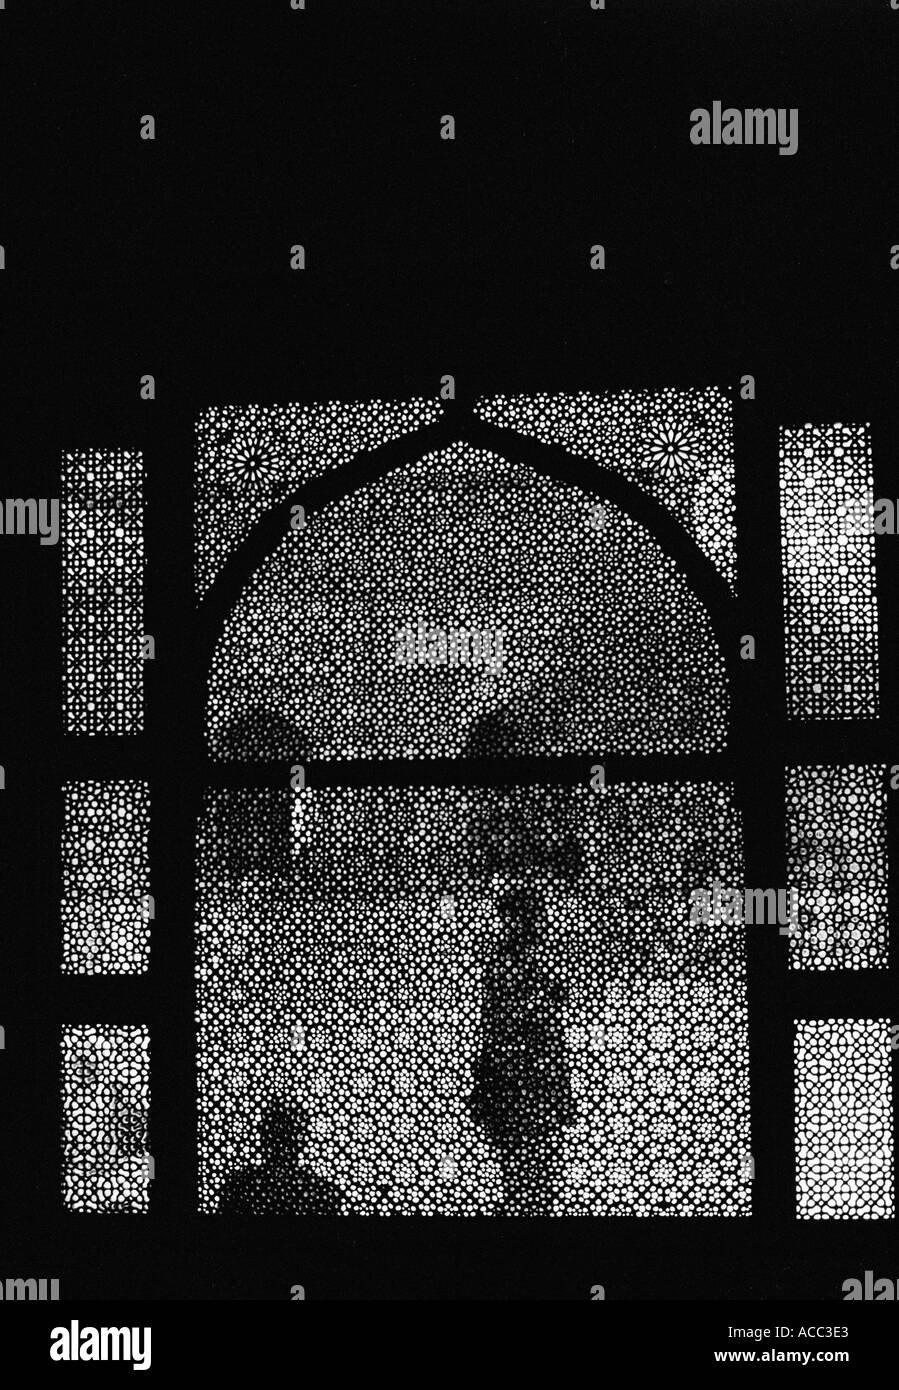 Indien Fatehpur Sikri Profil des Mannes durch Fenster Mosaik 1998 Stockfoto